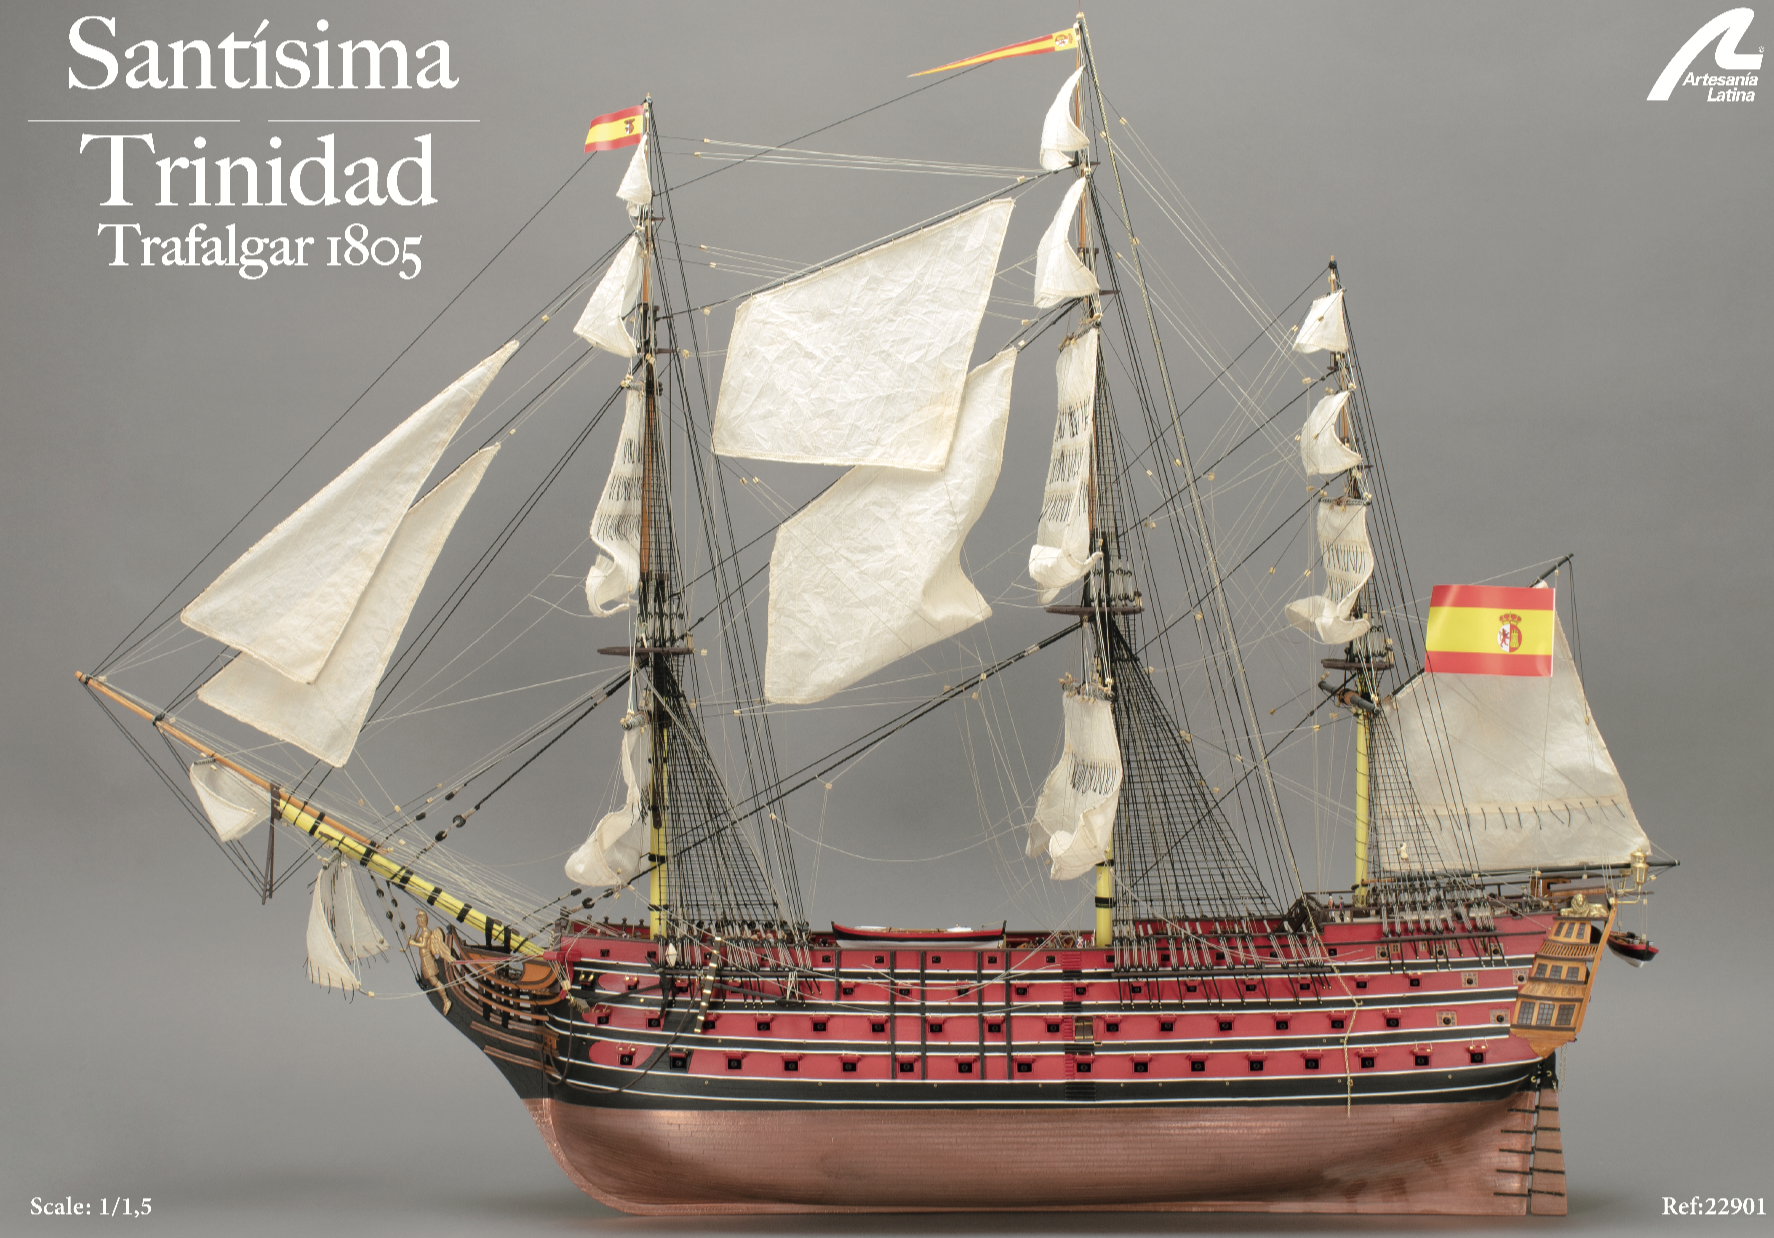 Plano 1:1 de Kit de Modelismo Naval en Madera Navío de Línea Español Santísima Trinidad (22901) de Artesanía Latina.